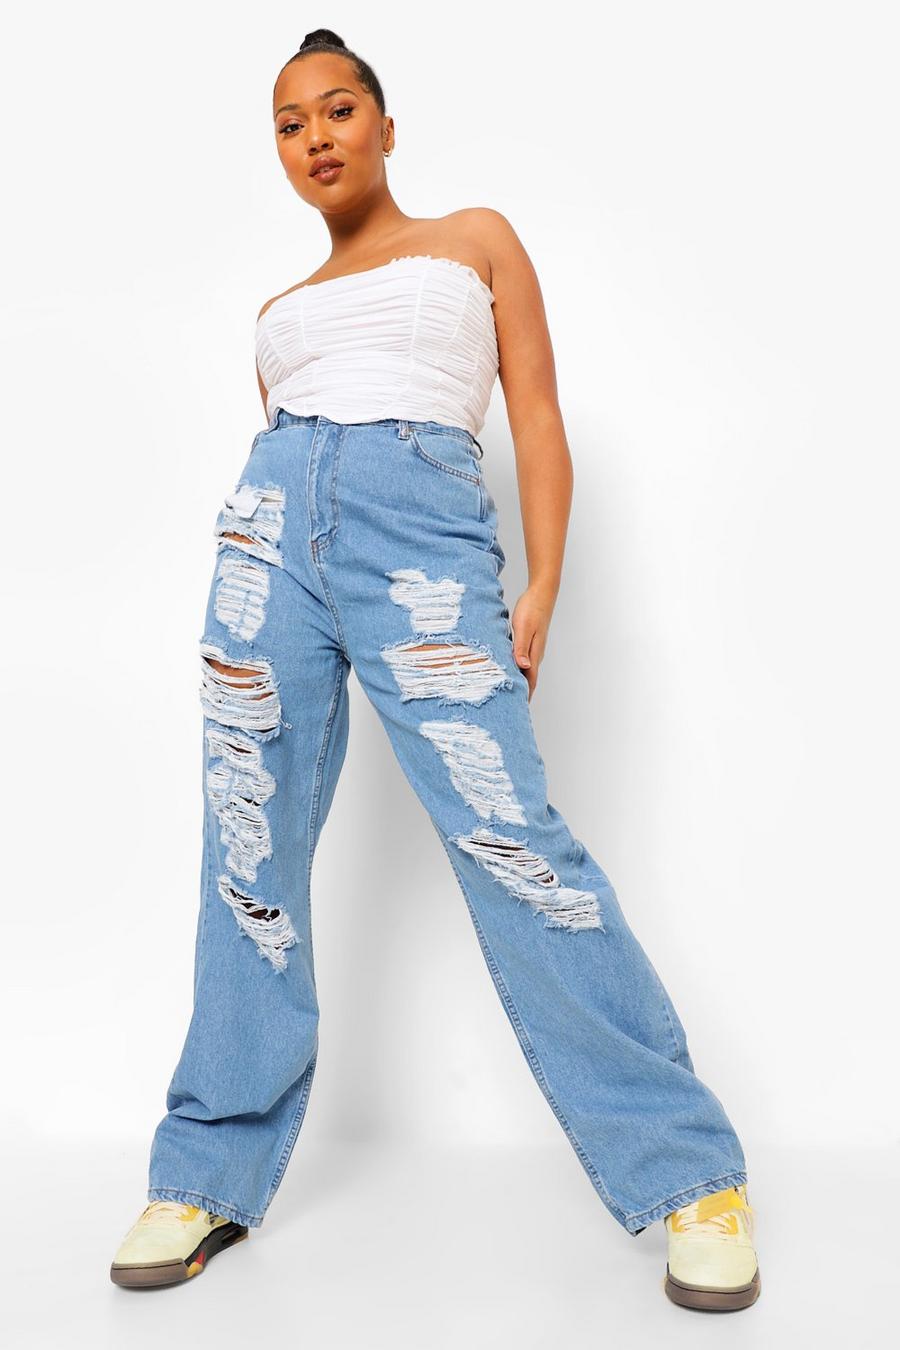 כחול בהיר ג'ינס בגזרת בויפרנד למידות גדולות עם קרעים גדולים במיוחד  image number 1